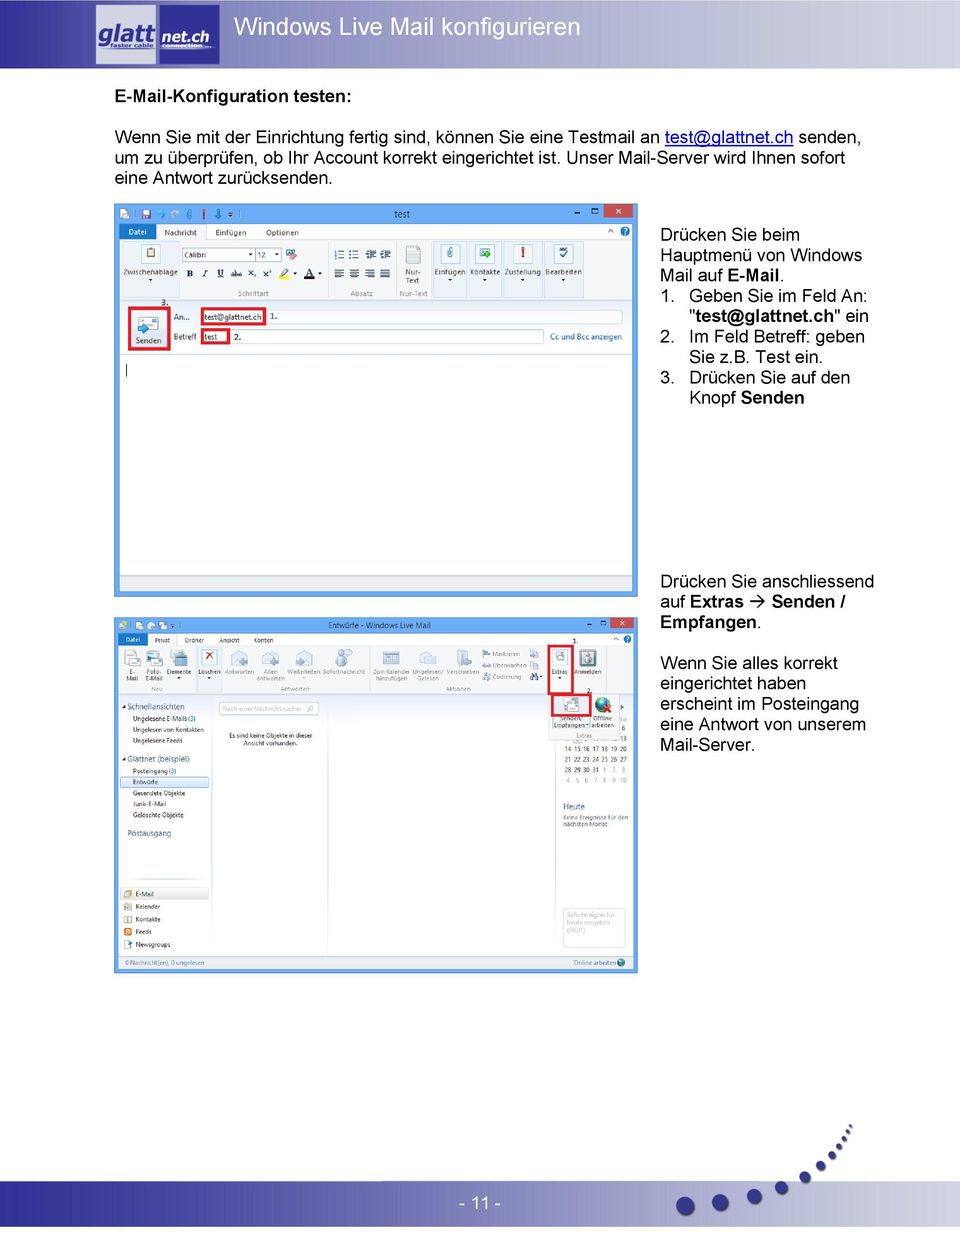 Drücken Sie beim Hauptmenü von Windows Mail auf E-Mail. 1. Geben Sie im Feld An: "test@glattnet.ch" ein 2. Im Feld Betreff: geben Sie z.b. Test ein. 3.